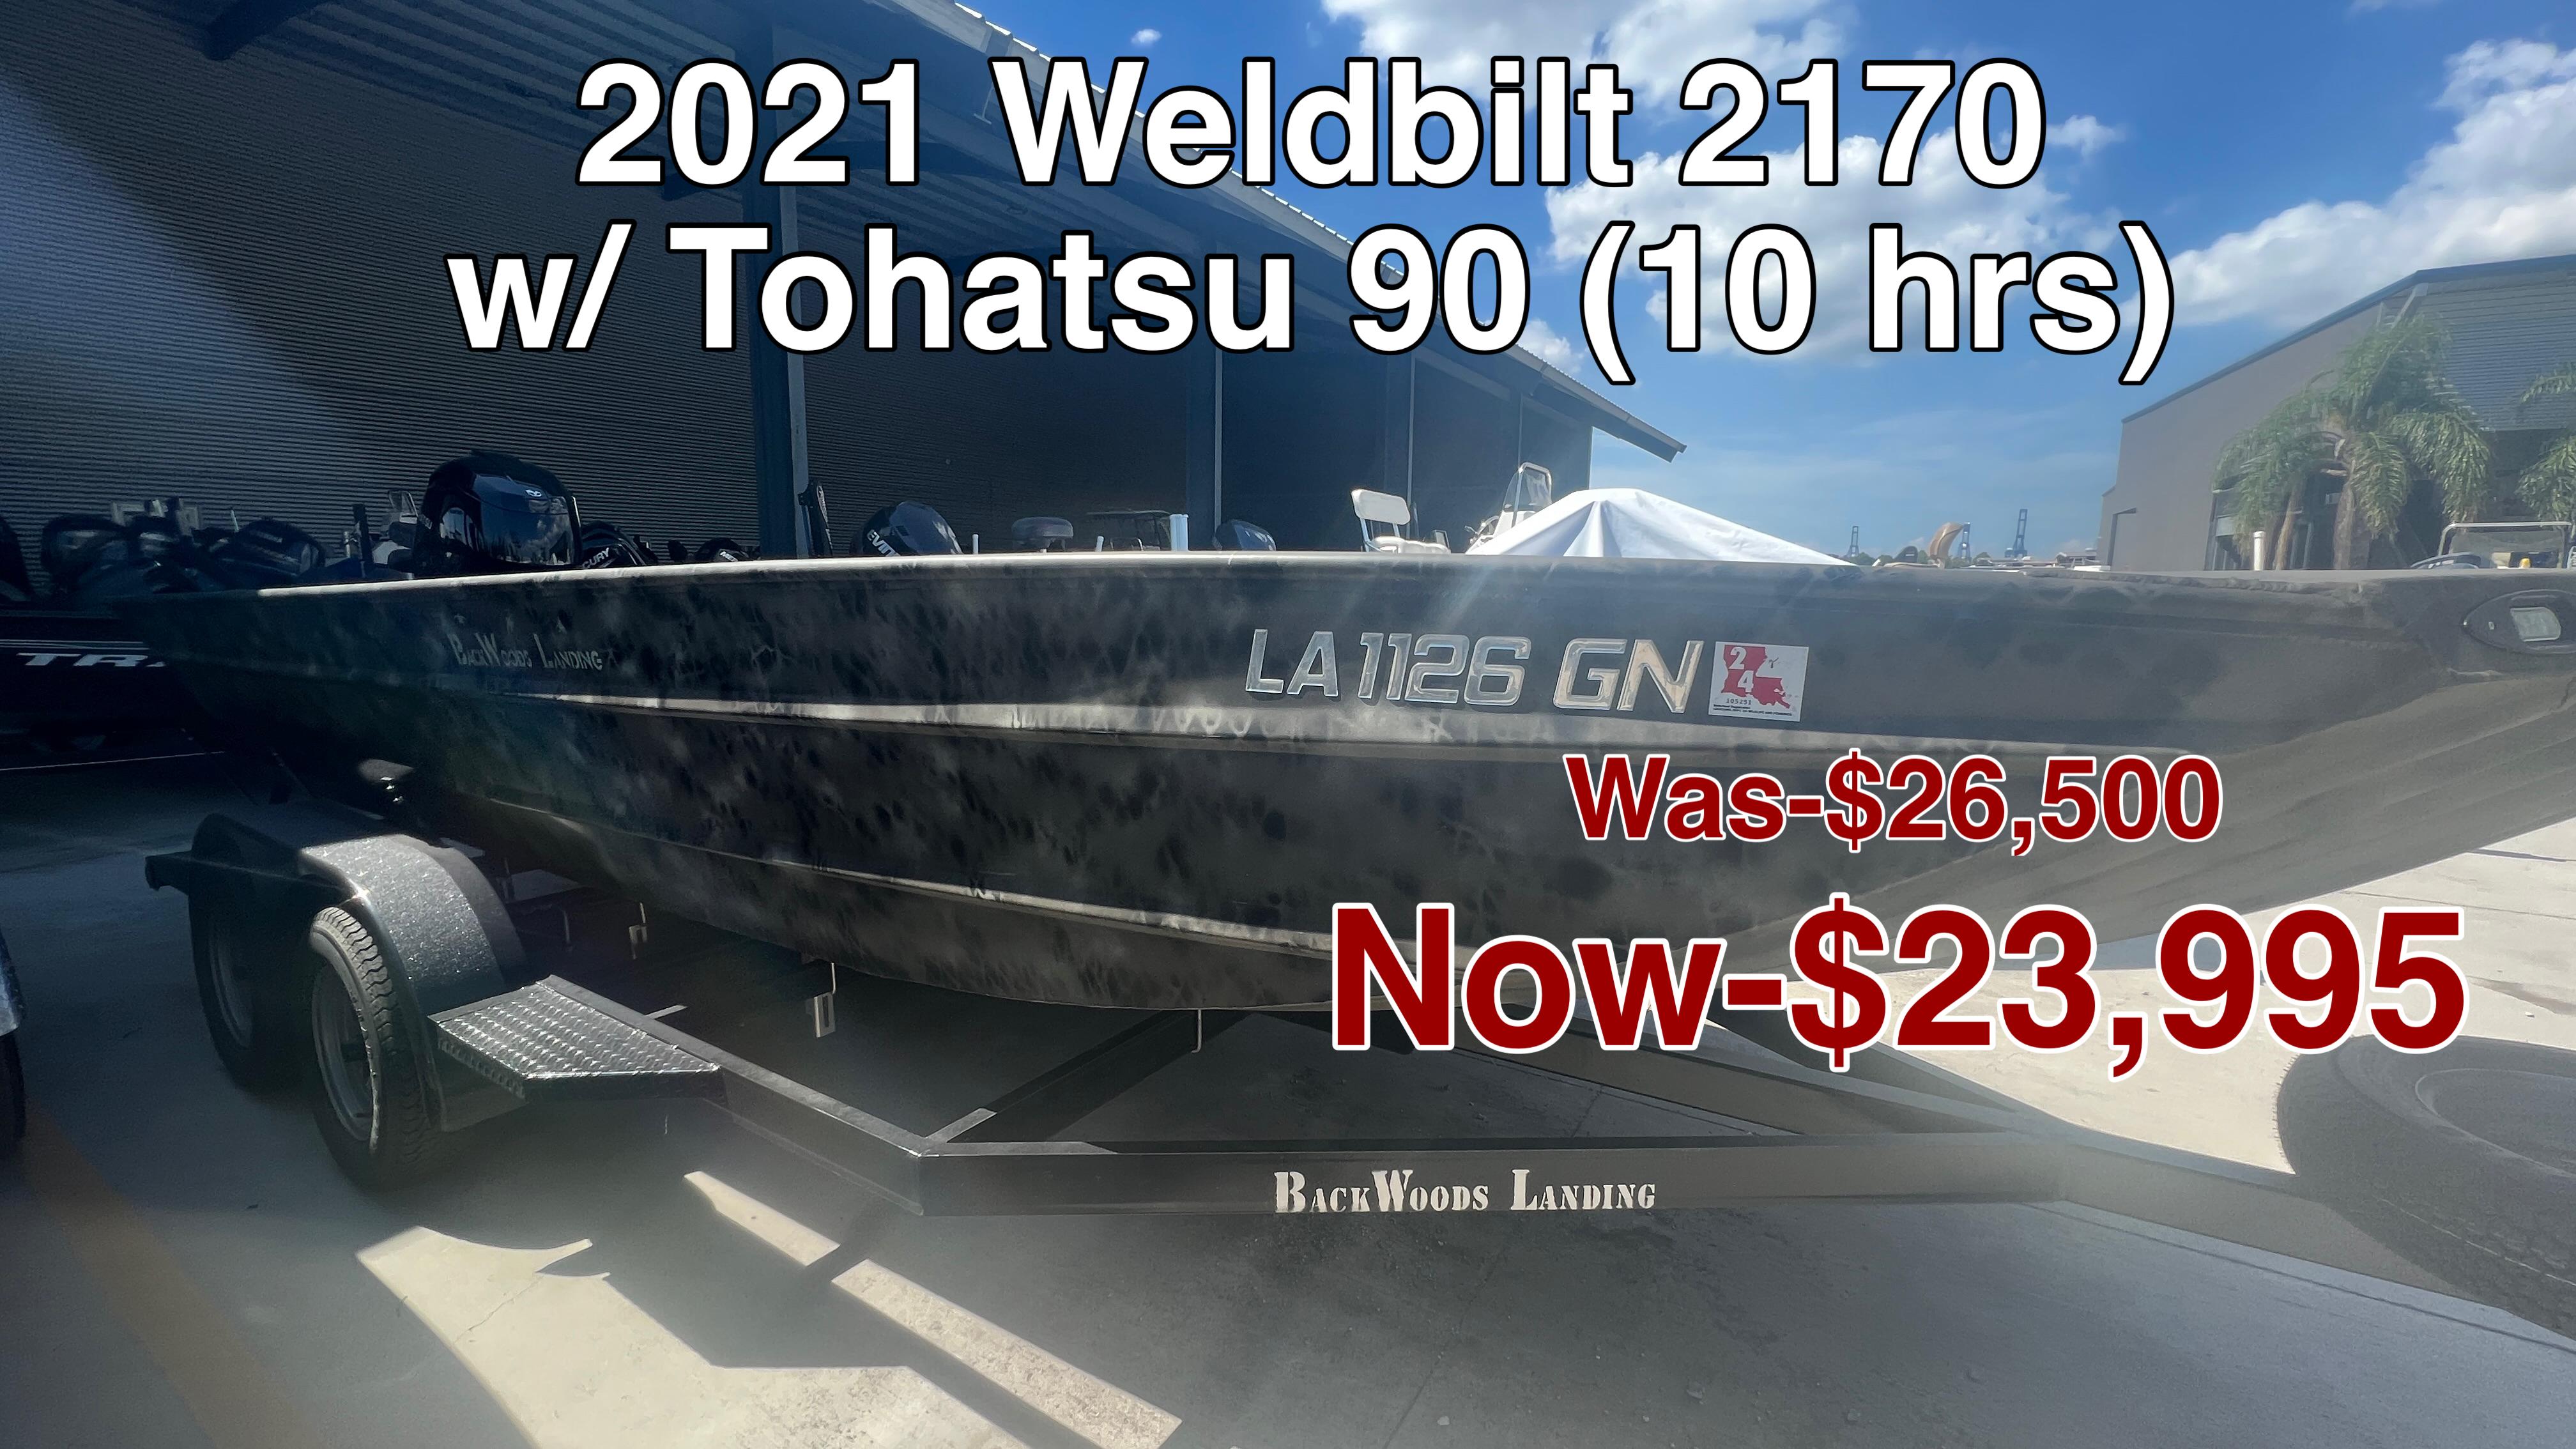 Weldbilt 18' Boat for sale in Jewett, TX for $21,750